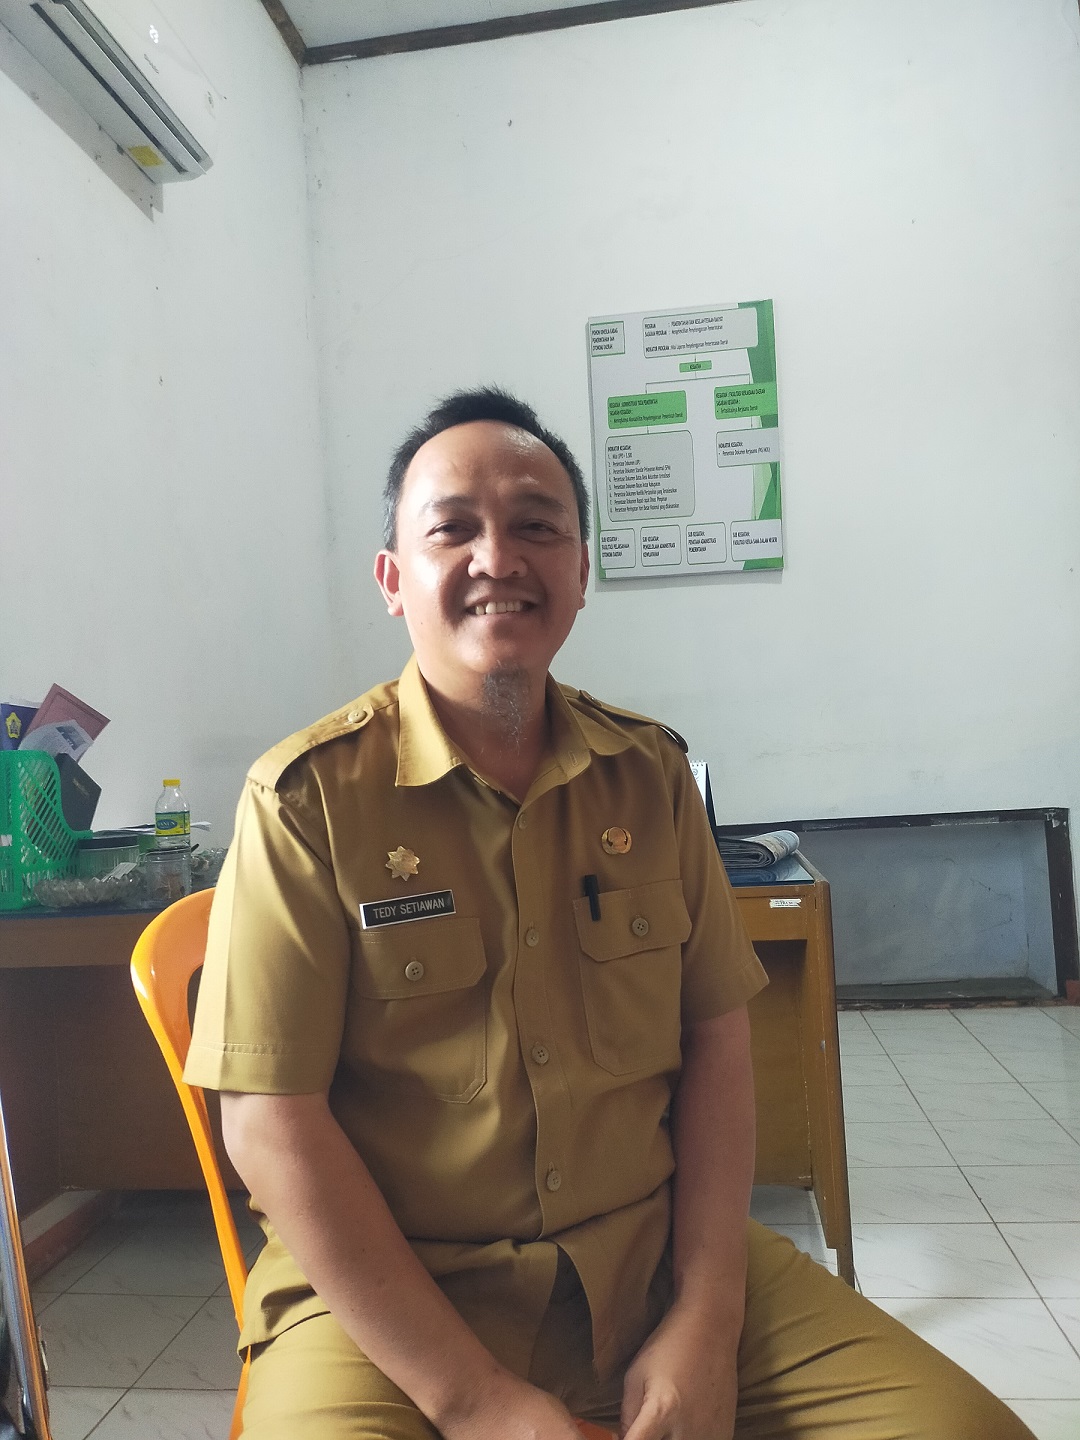 Pemkab Bengkulu Selatan Jalin Kerja Sama NHI Bandung dan PA Manna